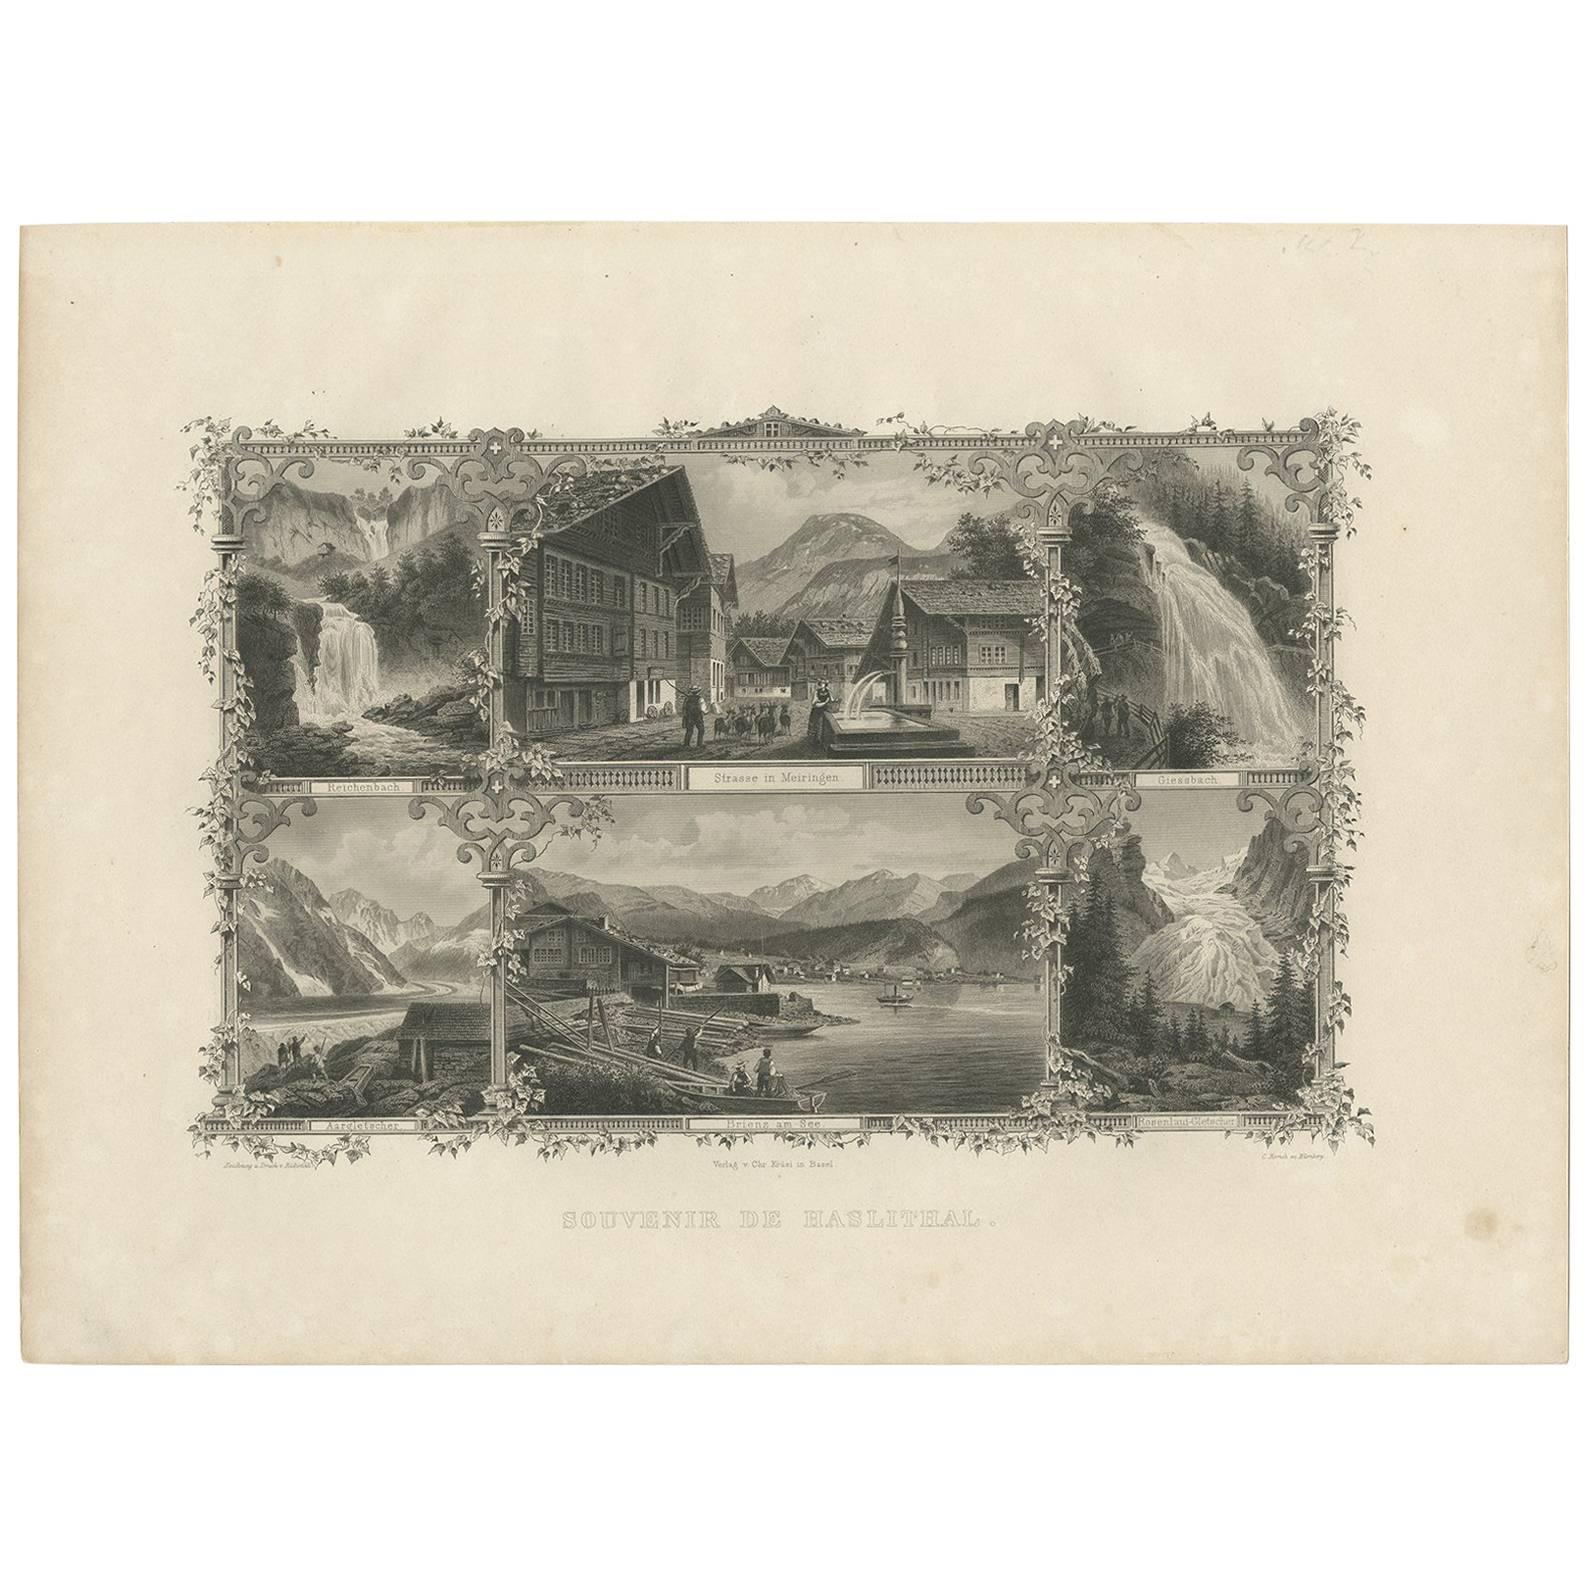 Impression ancienne de l'atelier Haslital "Switzerland" par C. Rorich, 1876